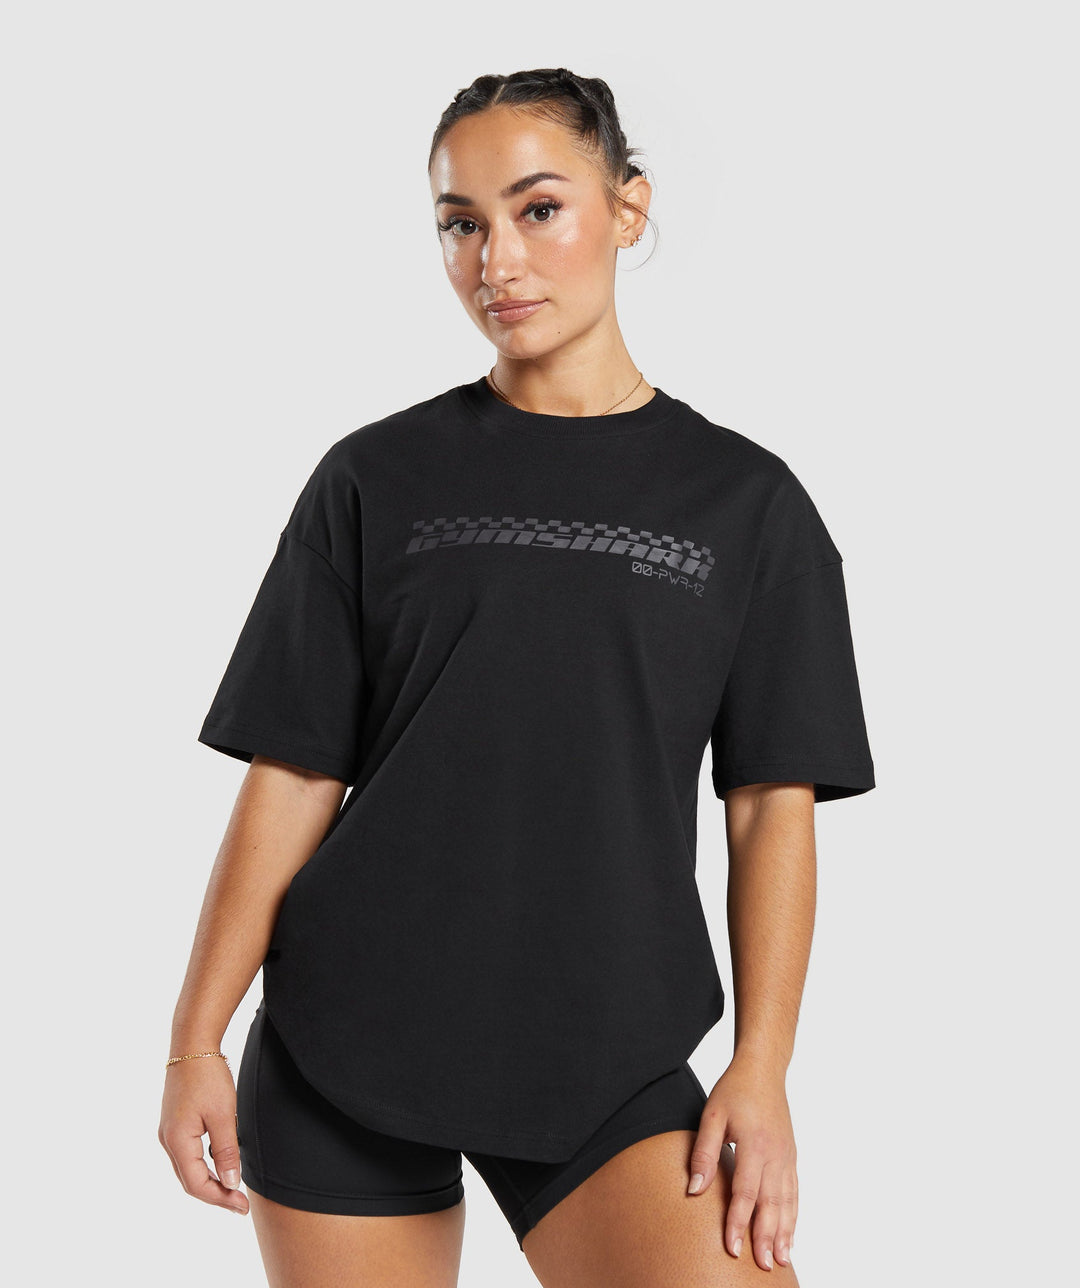 Gymshark Motorcross Oversized T-Shirt - Darkest Teal | Gymshark